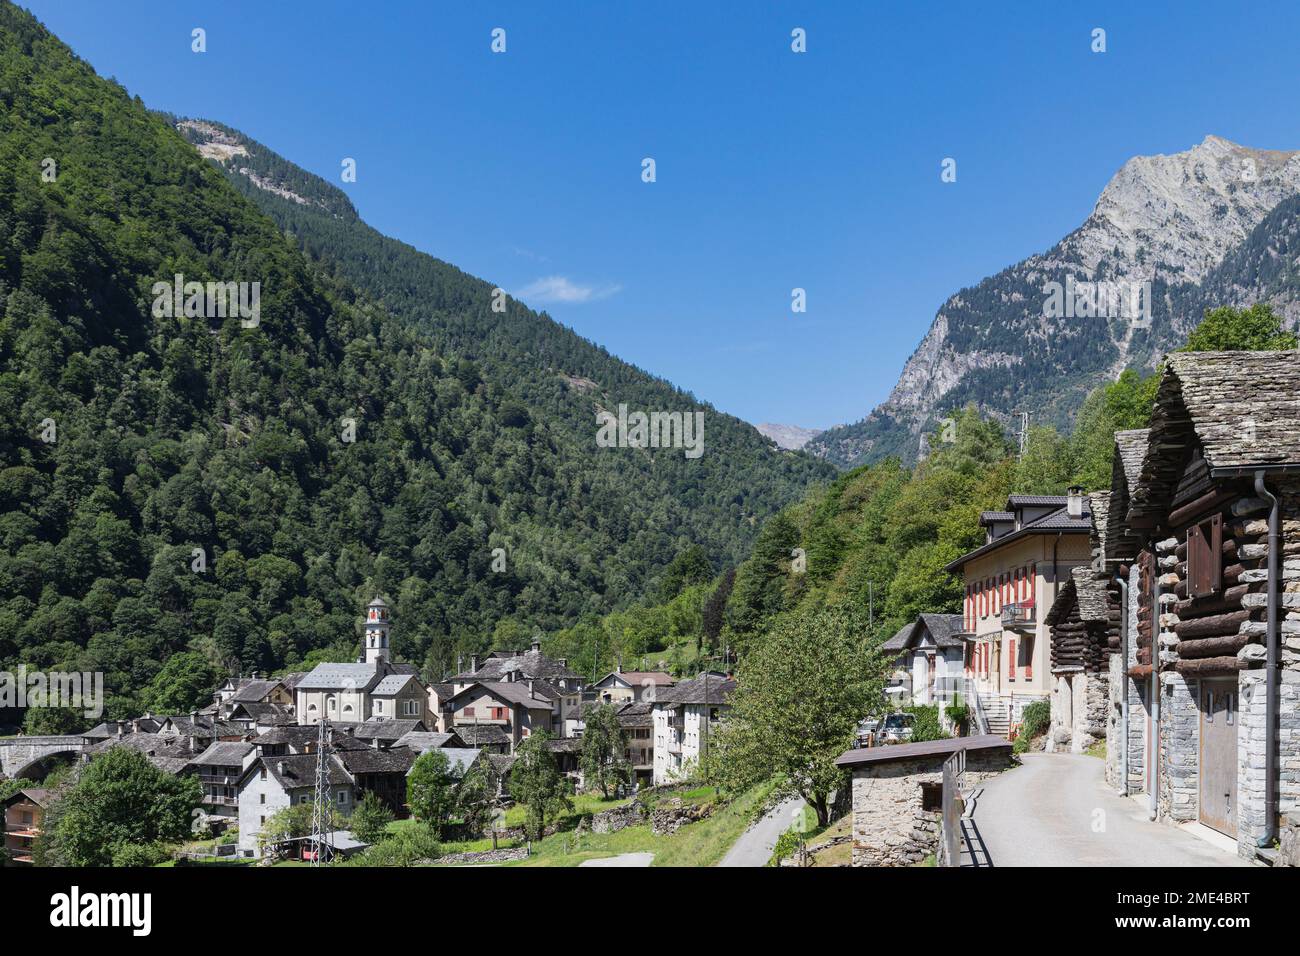 Switzerland, Ticino Canton, Prato-Sornico, Mountain village in Lavizzara Valley Stock Photo